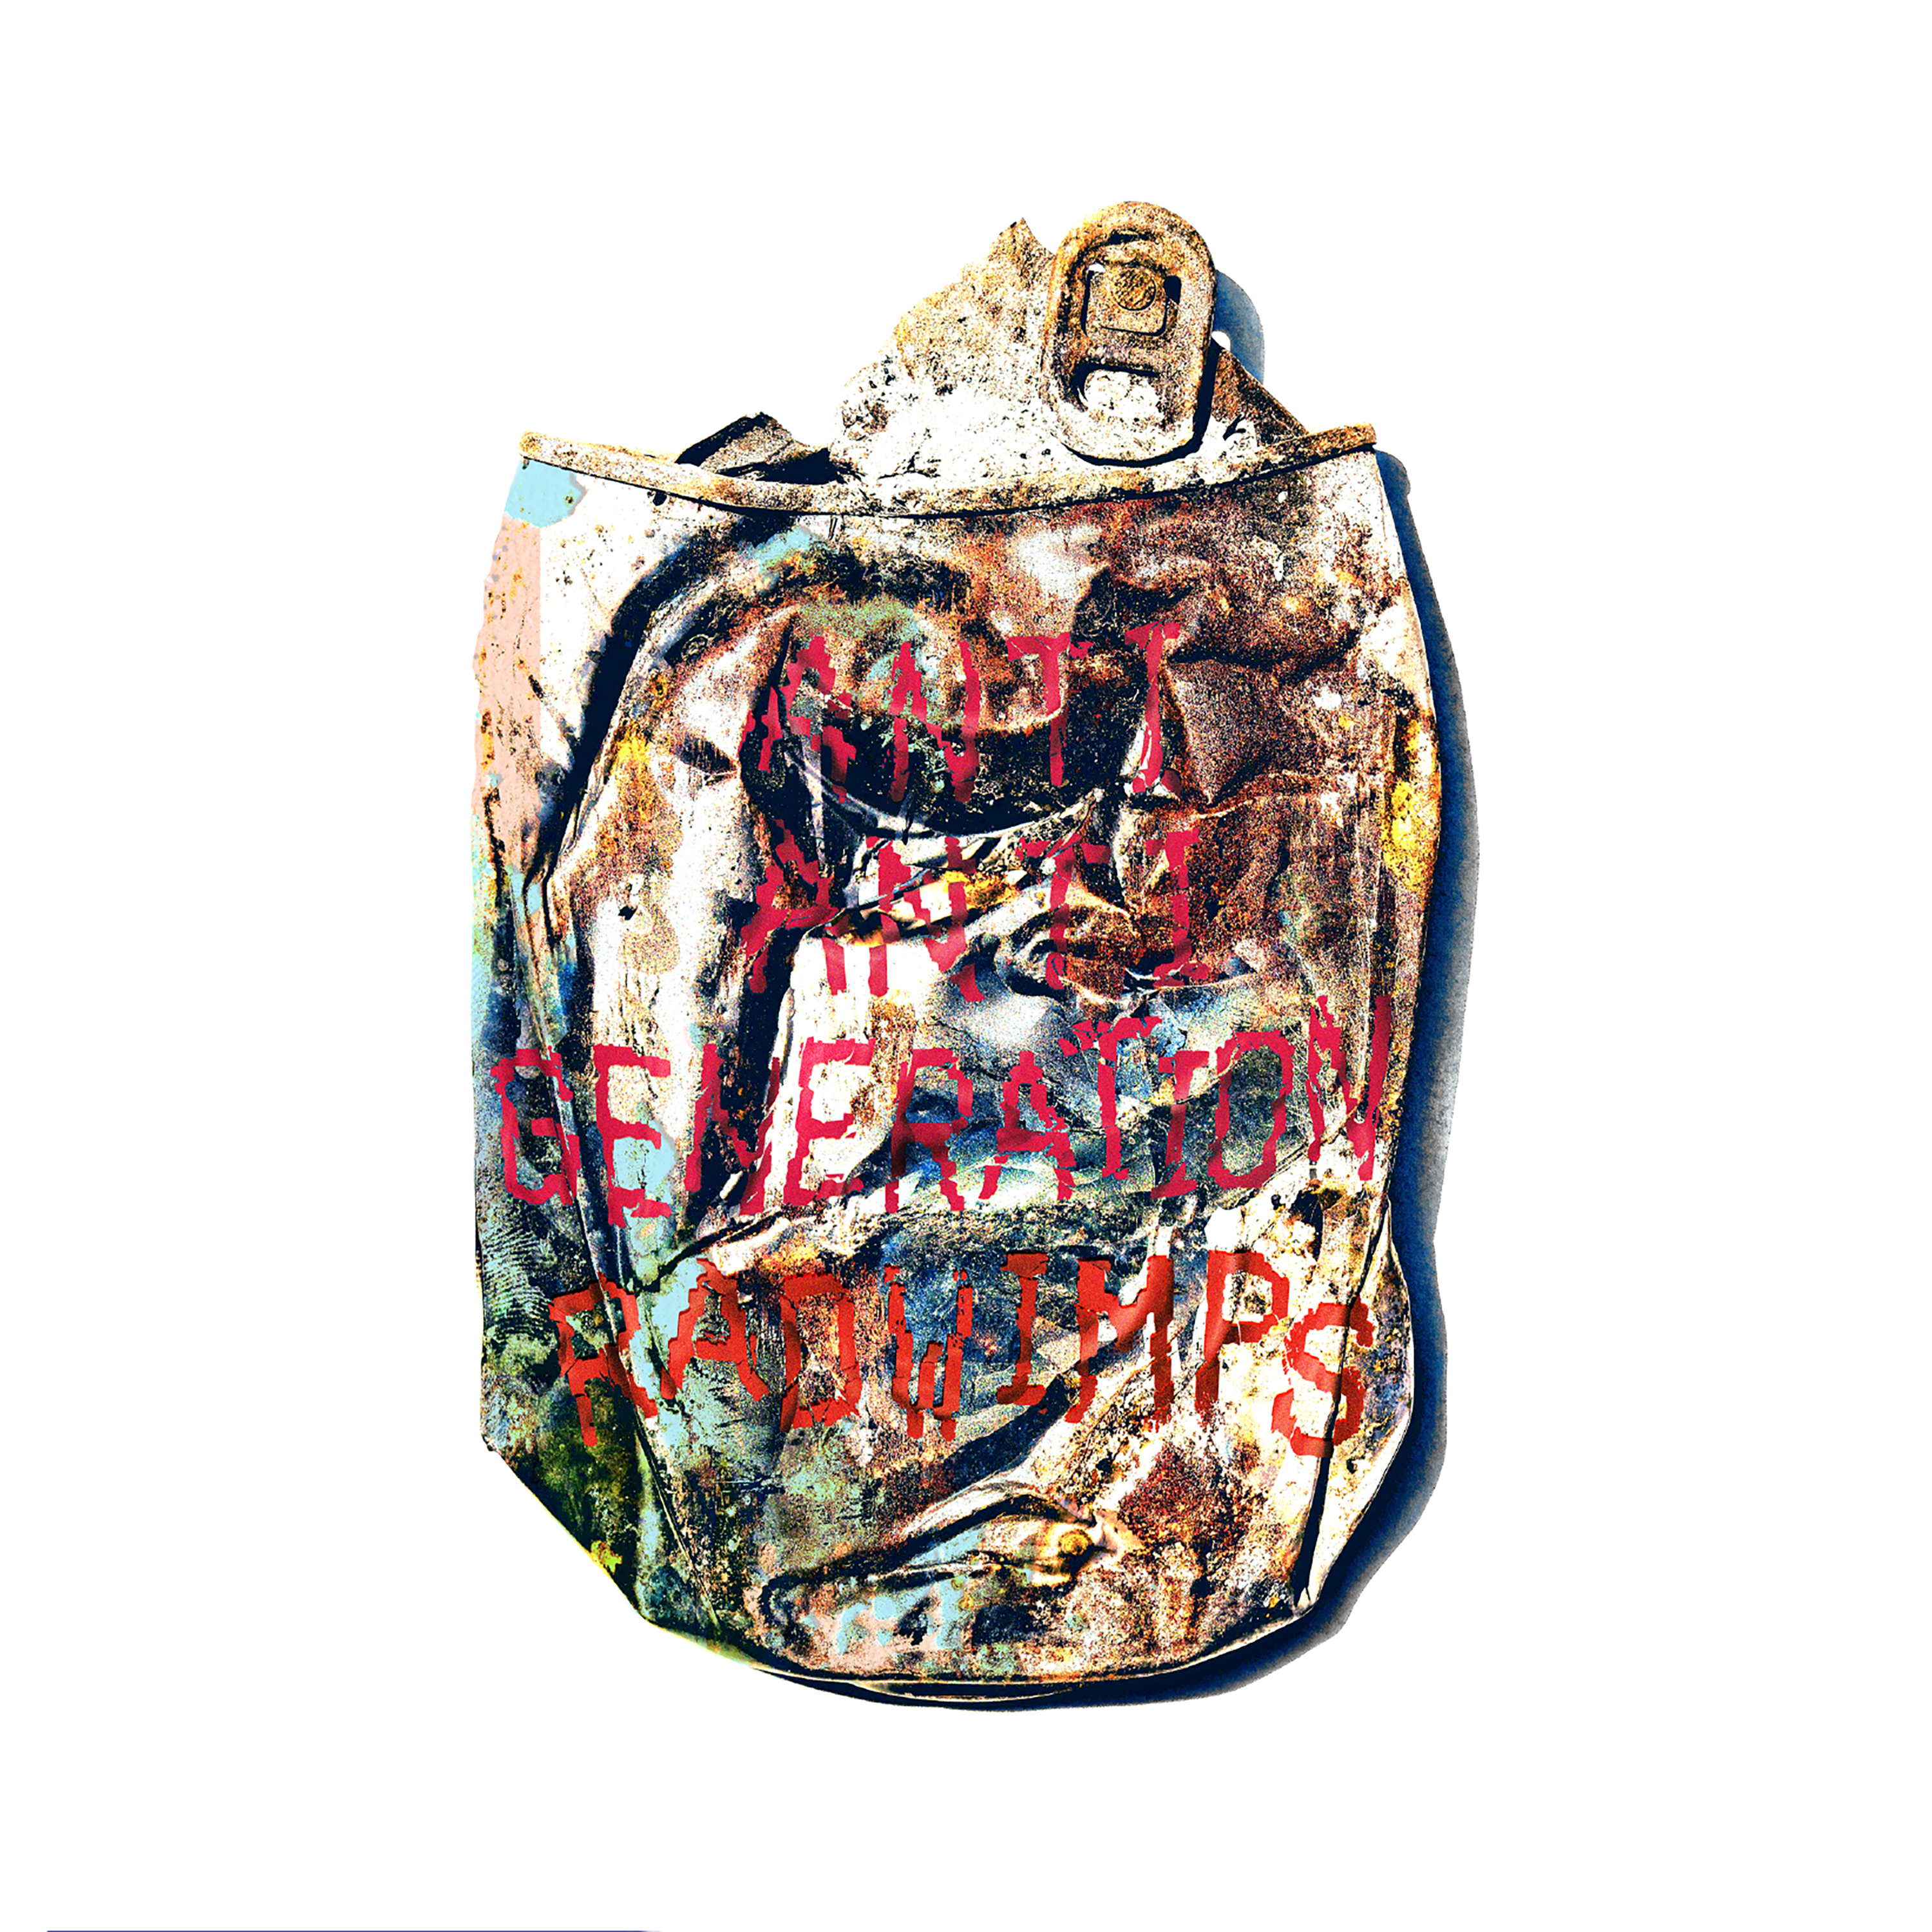 そっけない歌词 歌手RADWIMPS-专辑ANTI ANTI GENERATION-单曲《そっけない》LRC歌词下载